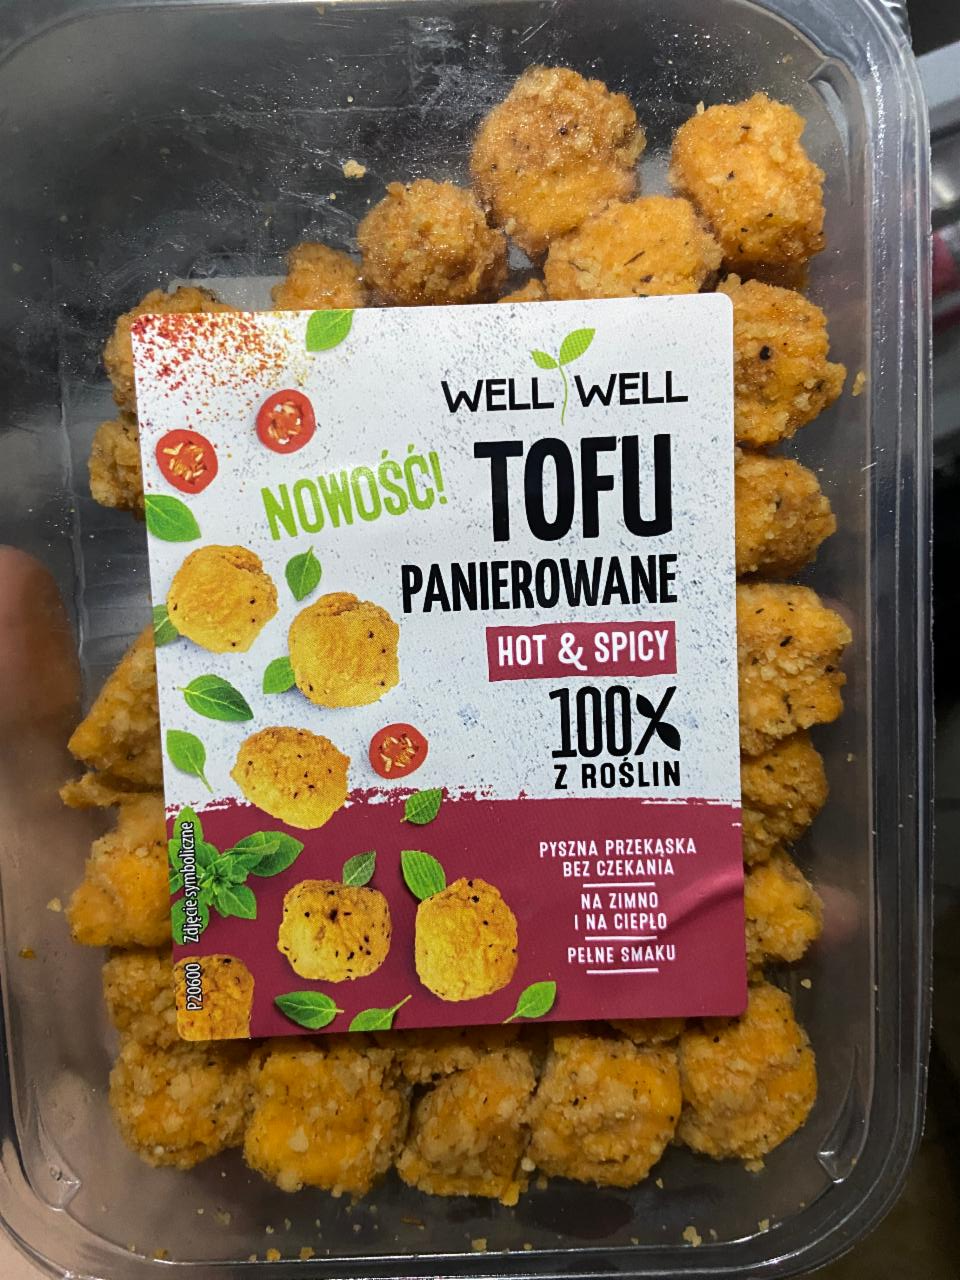 Zdjęcia - Tofu panierowane hot & spicy WellWell